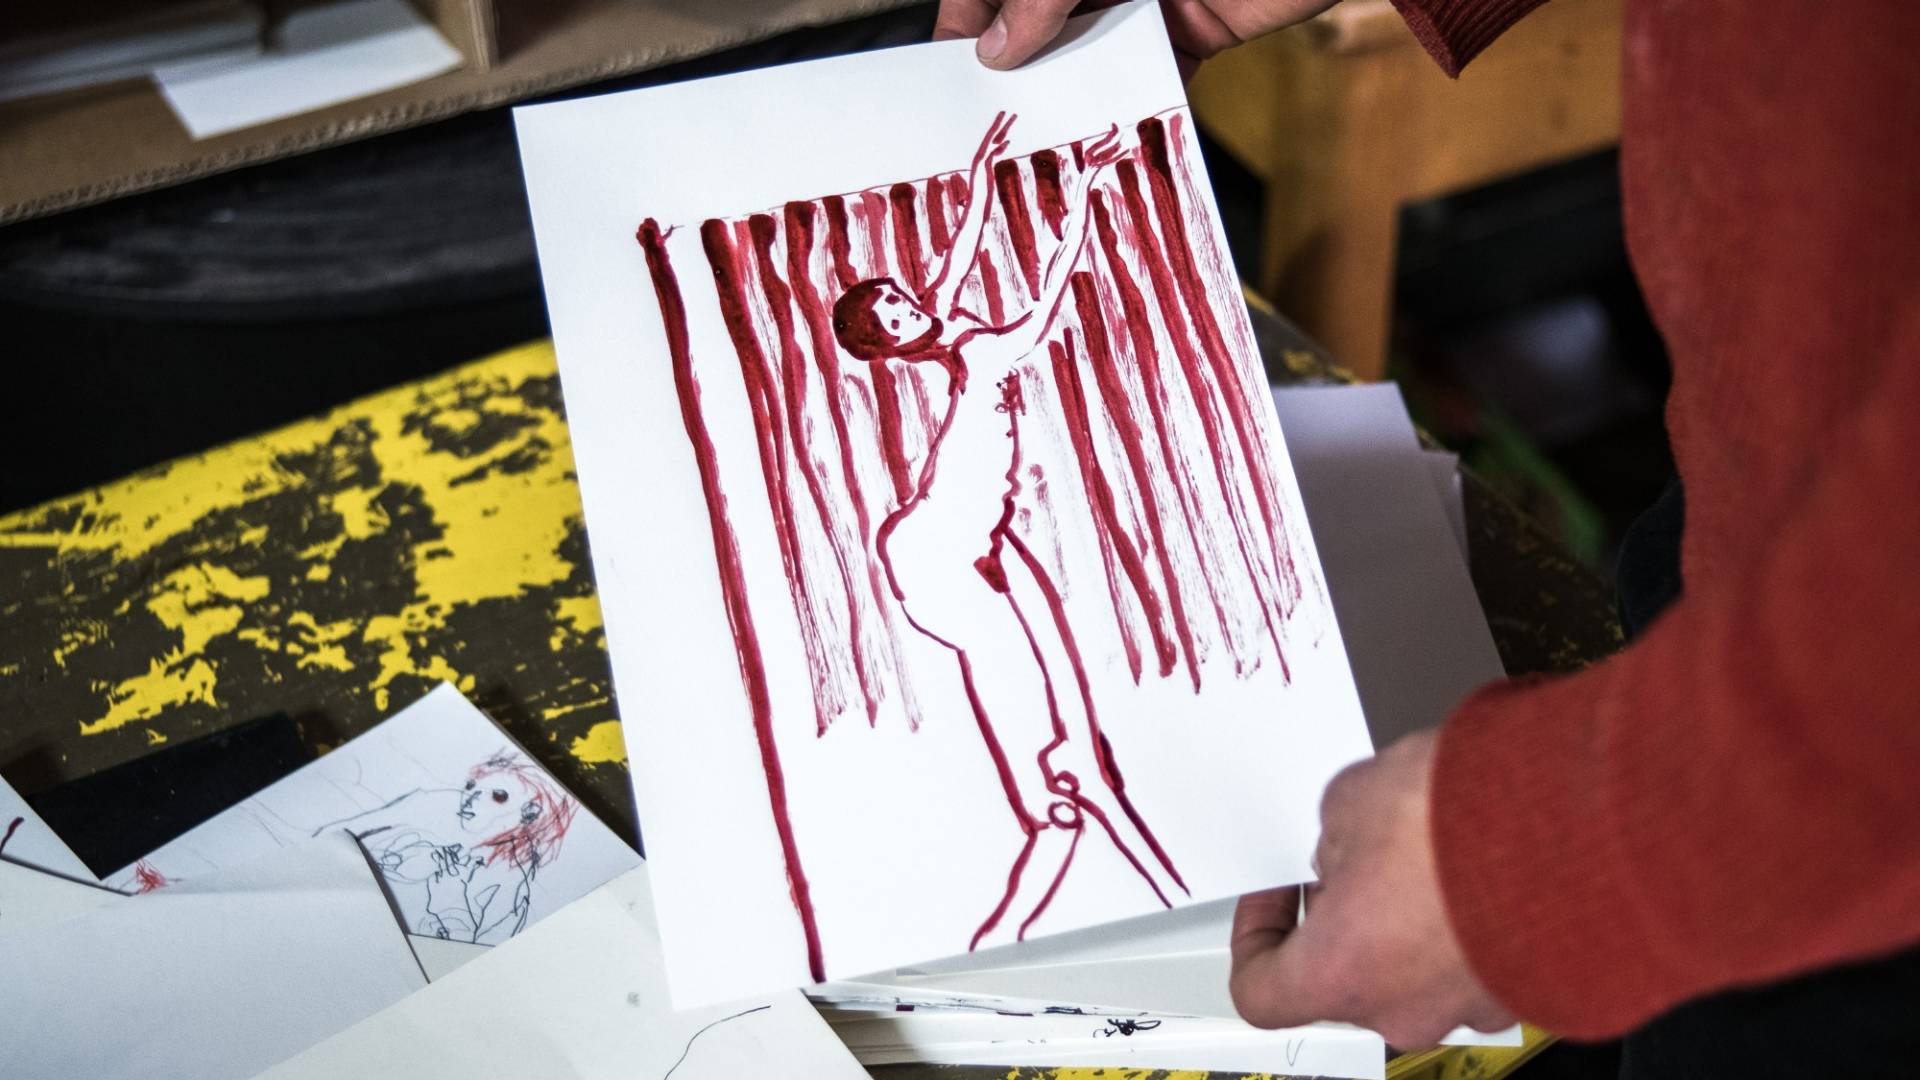 Andriu Deplazes hält eine Skizze in die Kamera – sie zeigt eine mit roter Tusche gezeichnete, tanzende Frau vor einem vorhangähnlichen Hintergrund. Im Hintergrund sind weitere, auf einem Tisch liegende Skizzen erkennbar.